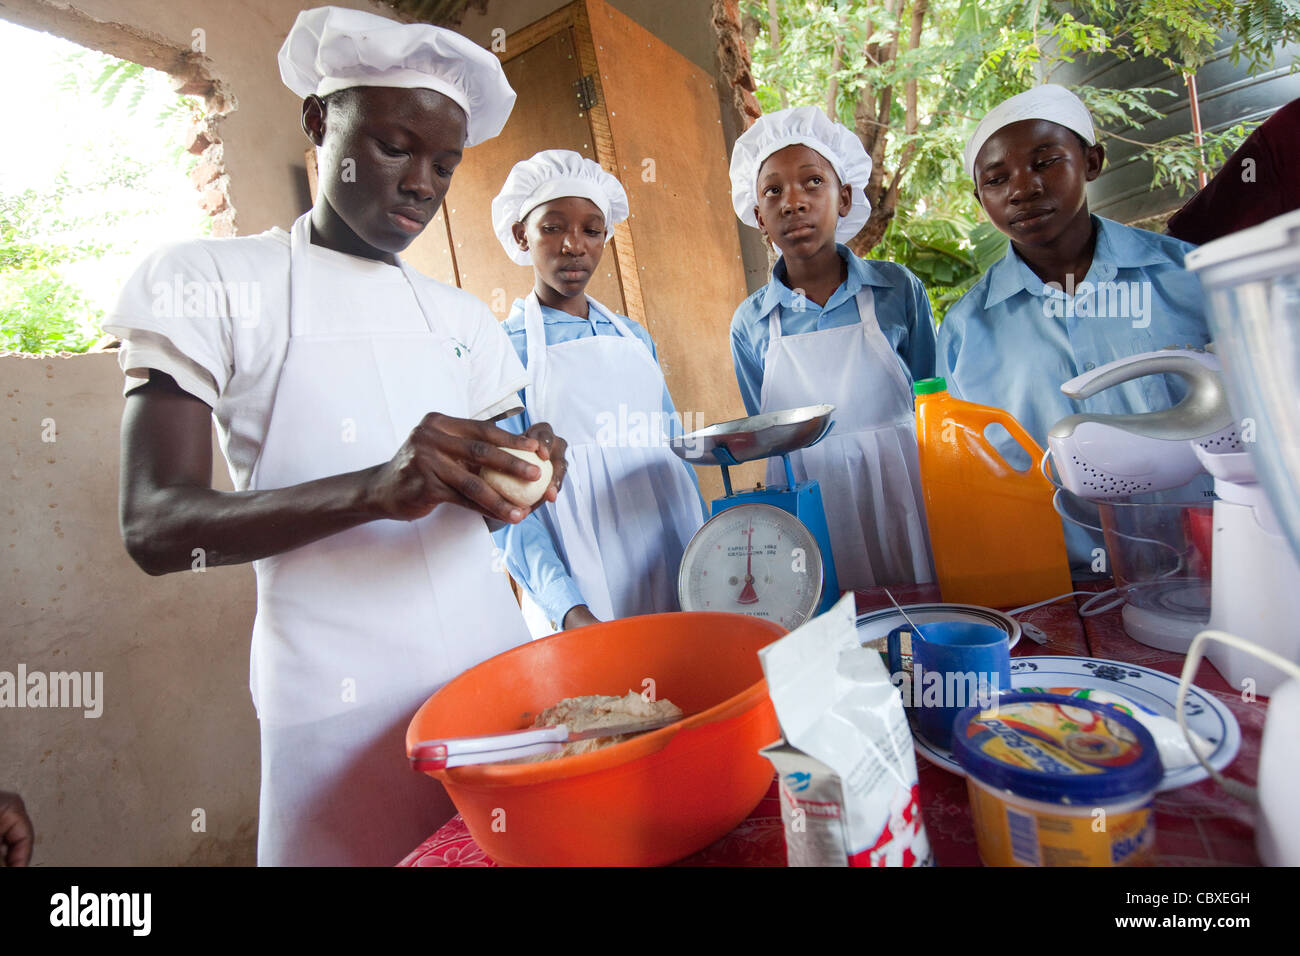 Les élèves fréquentent une classe d'art culinaire dans la région de Morogoro, Tanzanie, Afrique de l'Est. Banque D'Images